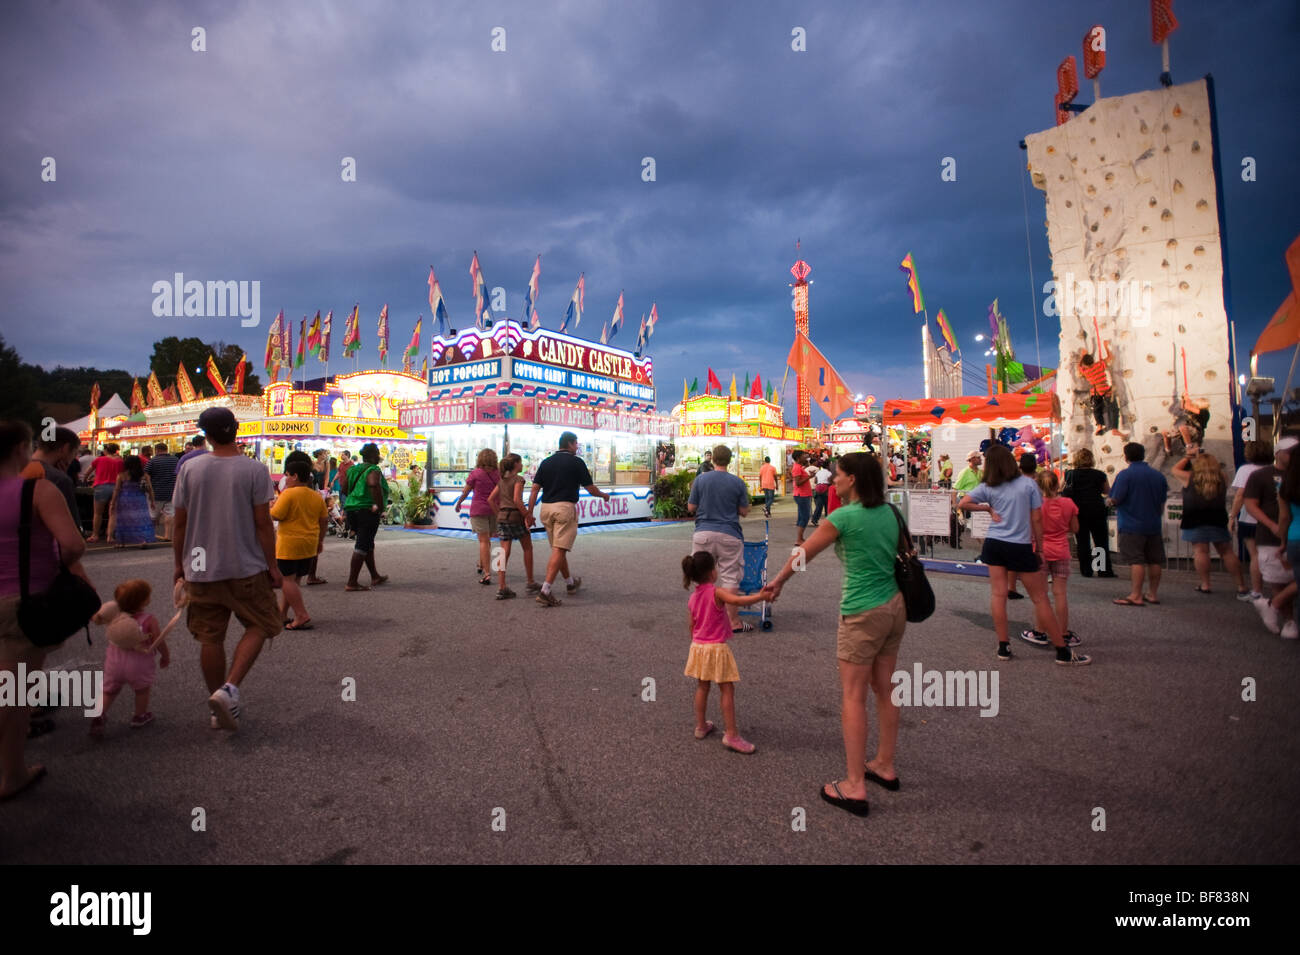 State Fair carnival midway en la noche Foto de stock